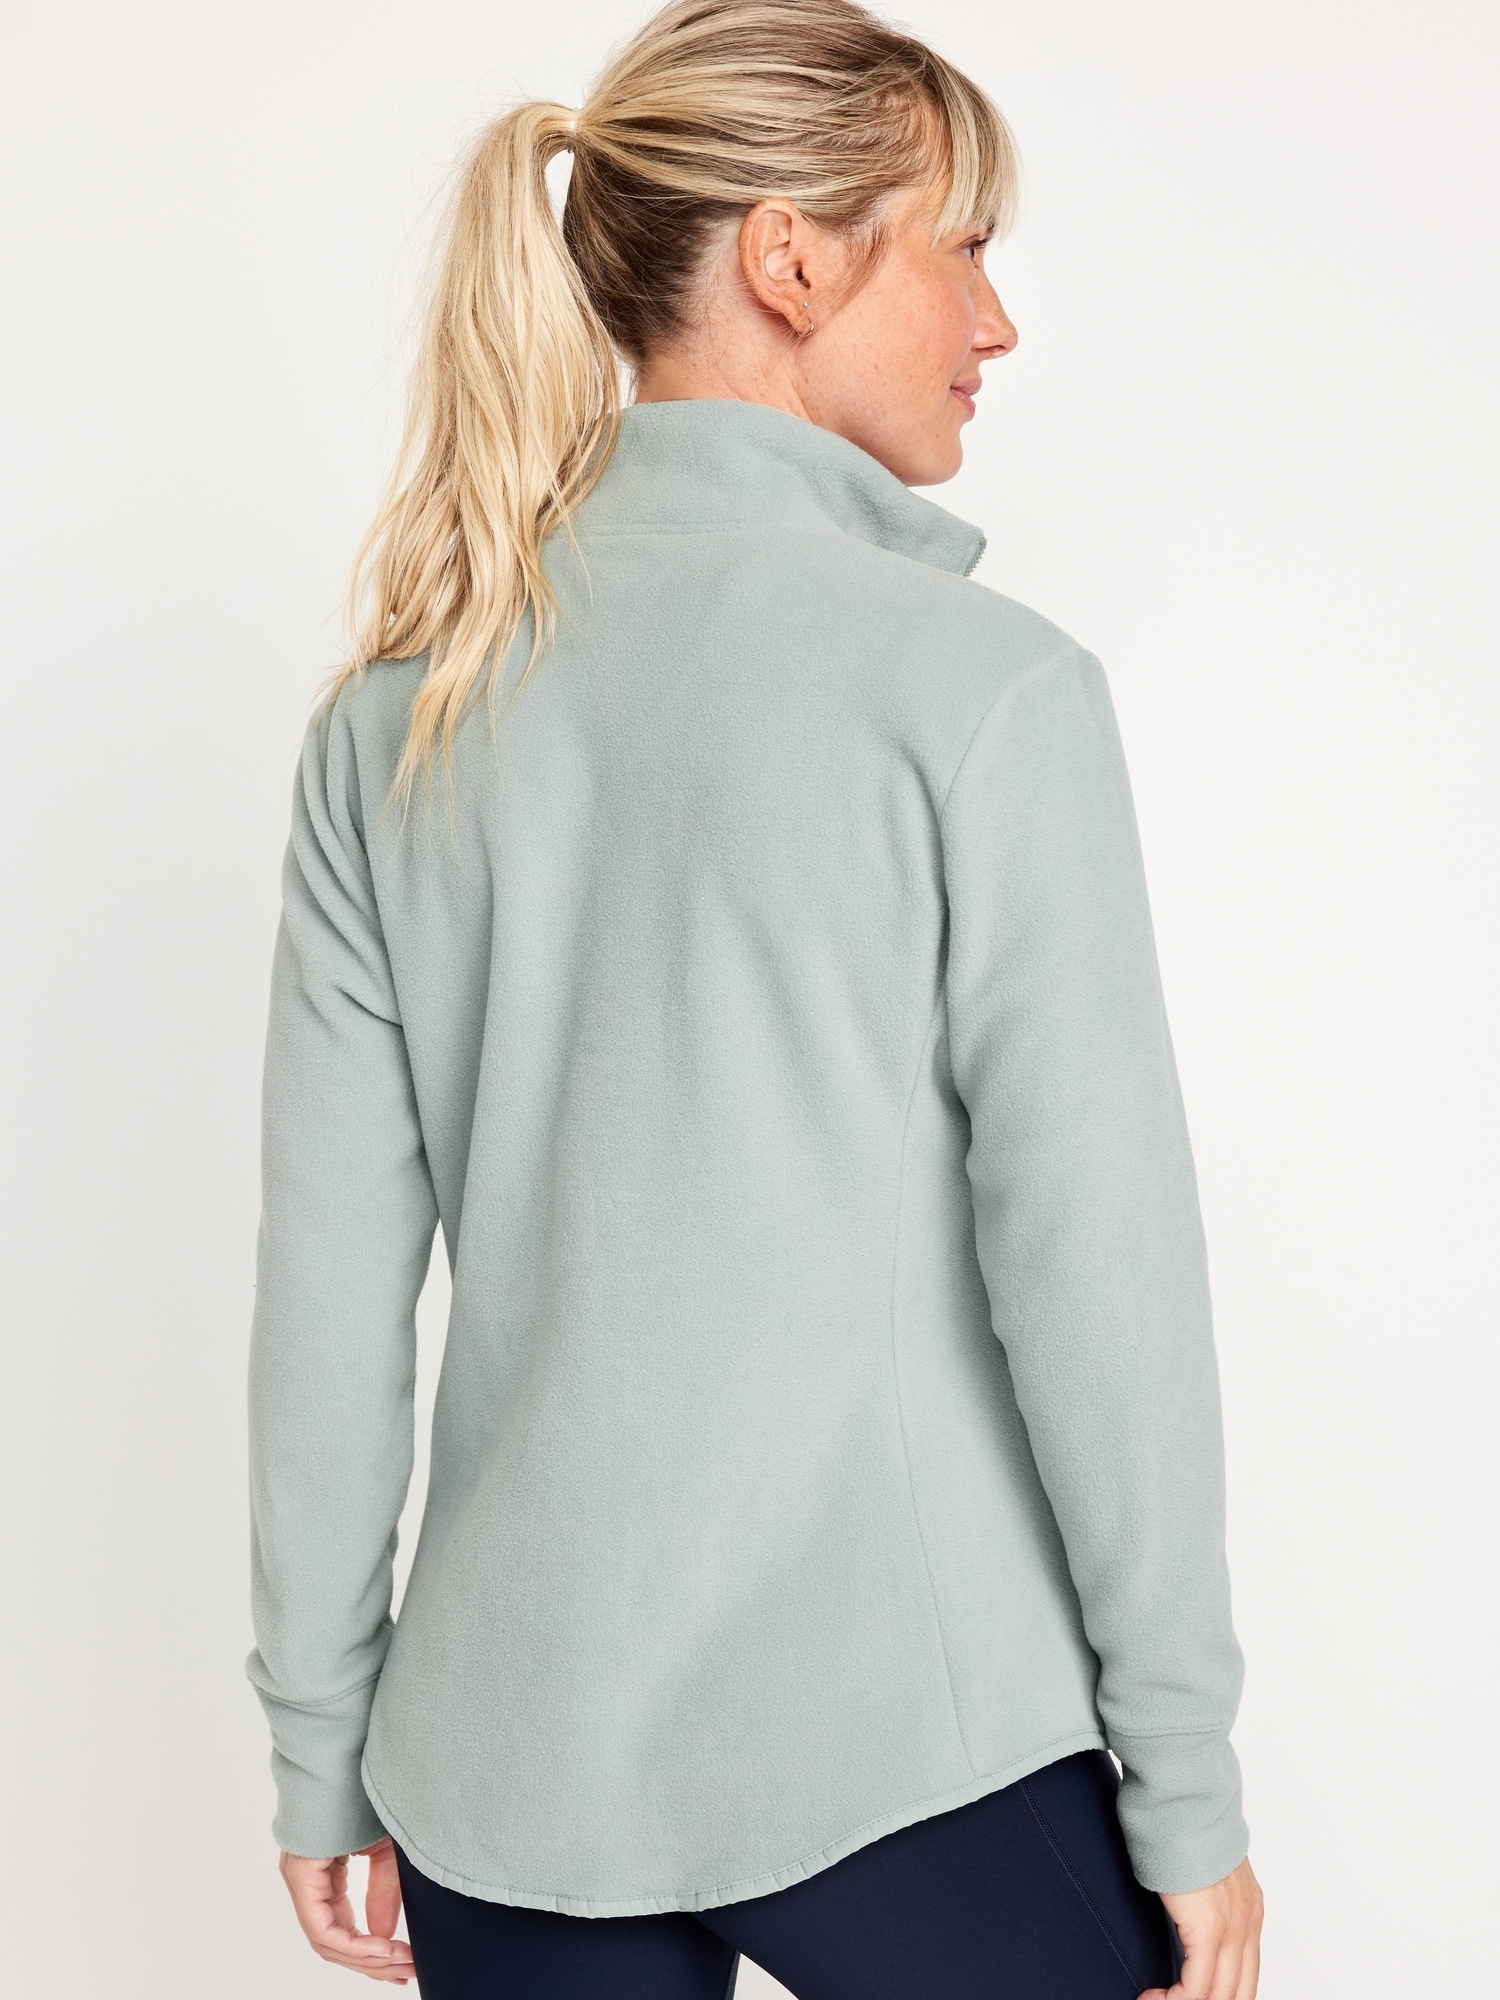 Microfleece Zip Jacket for Women | Old Navy